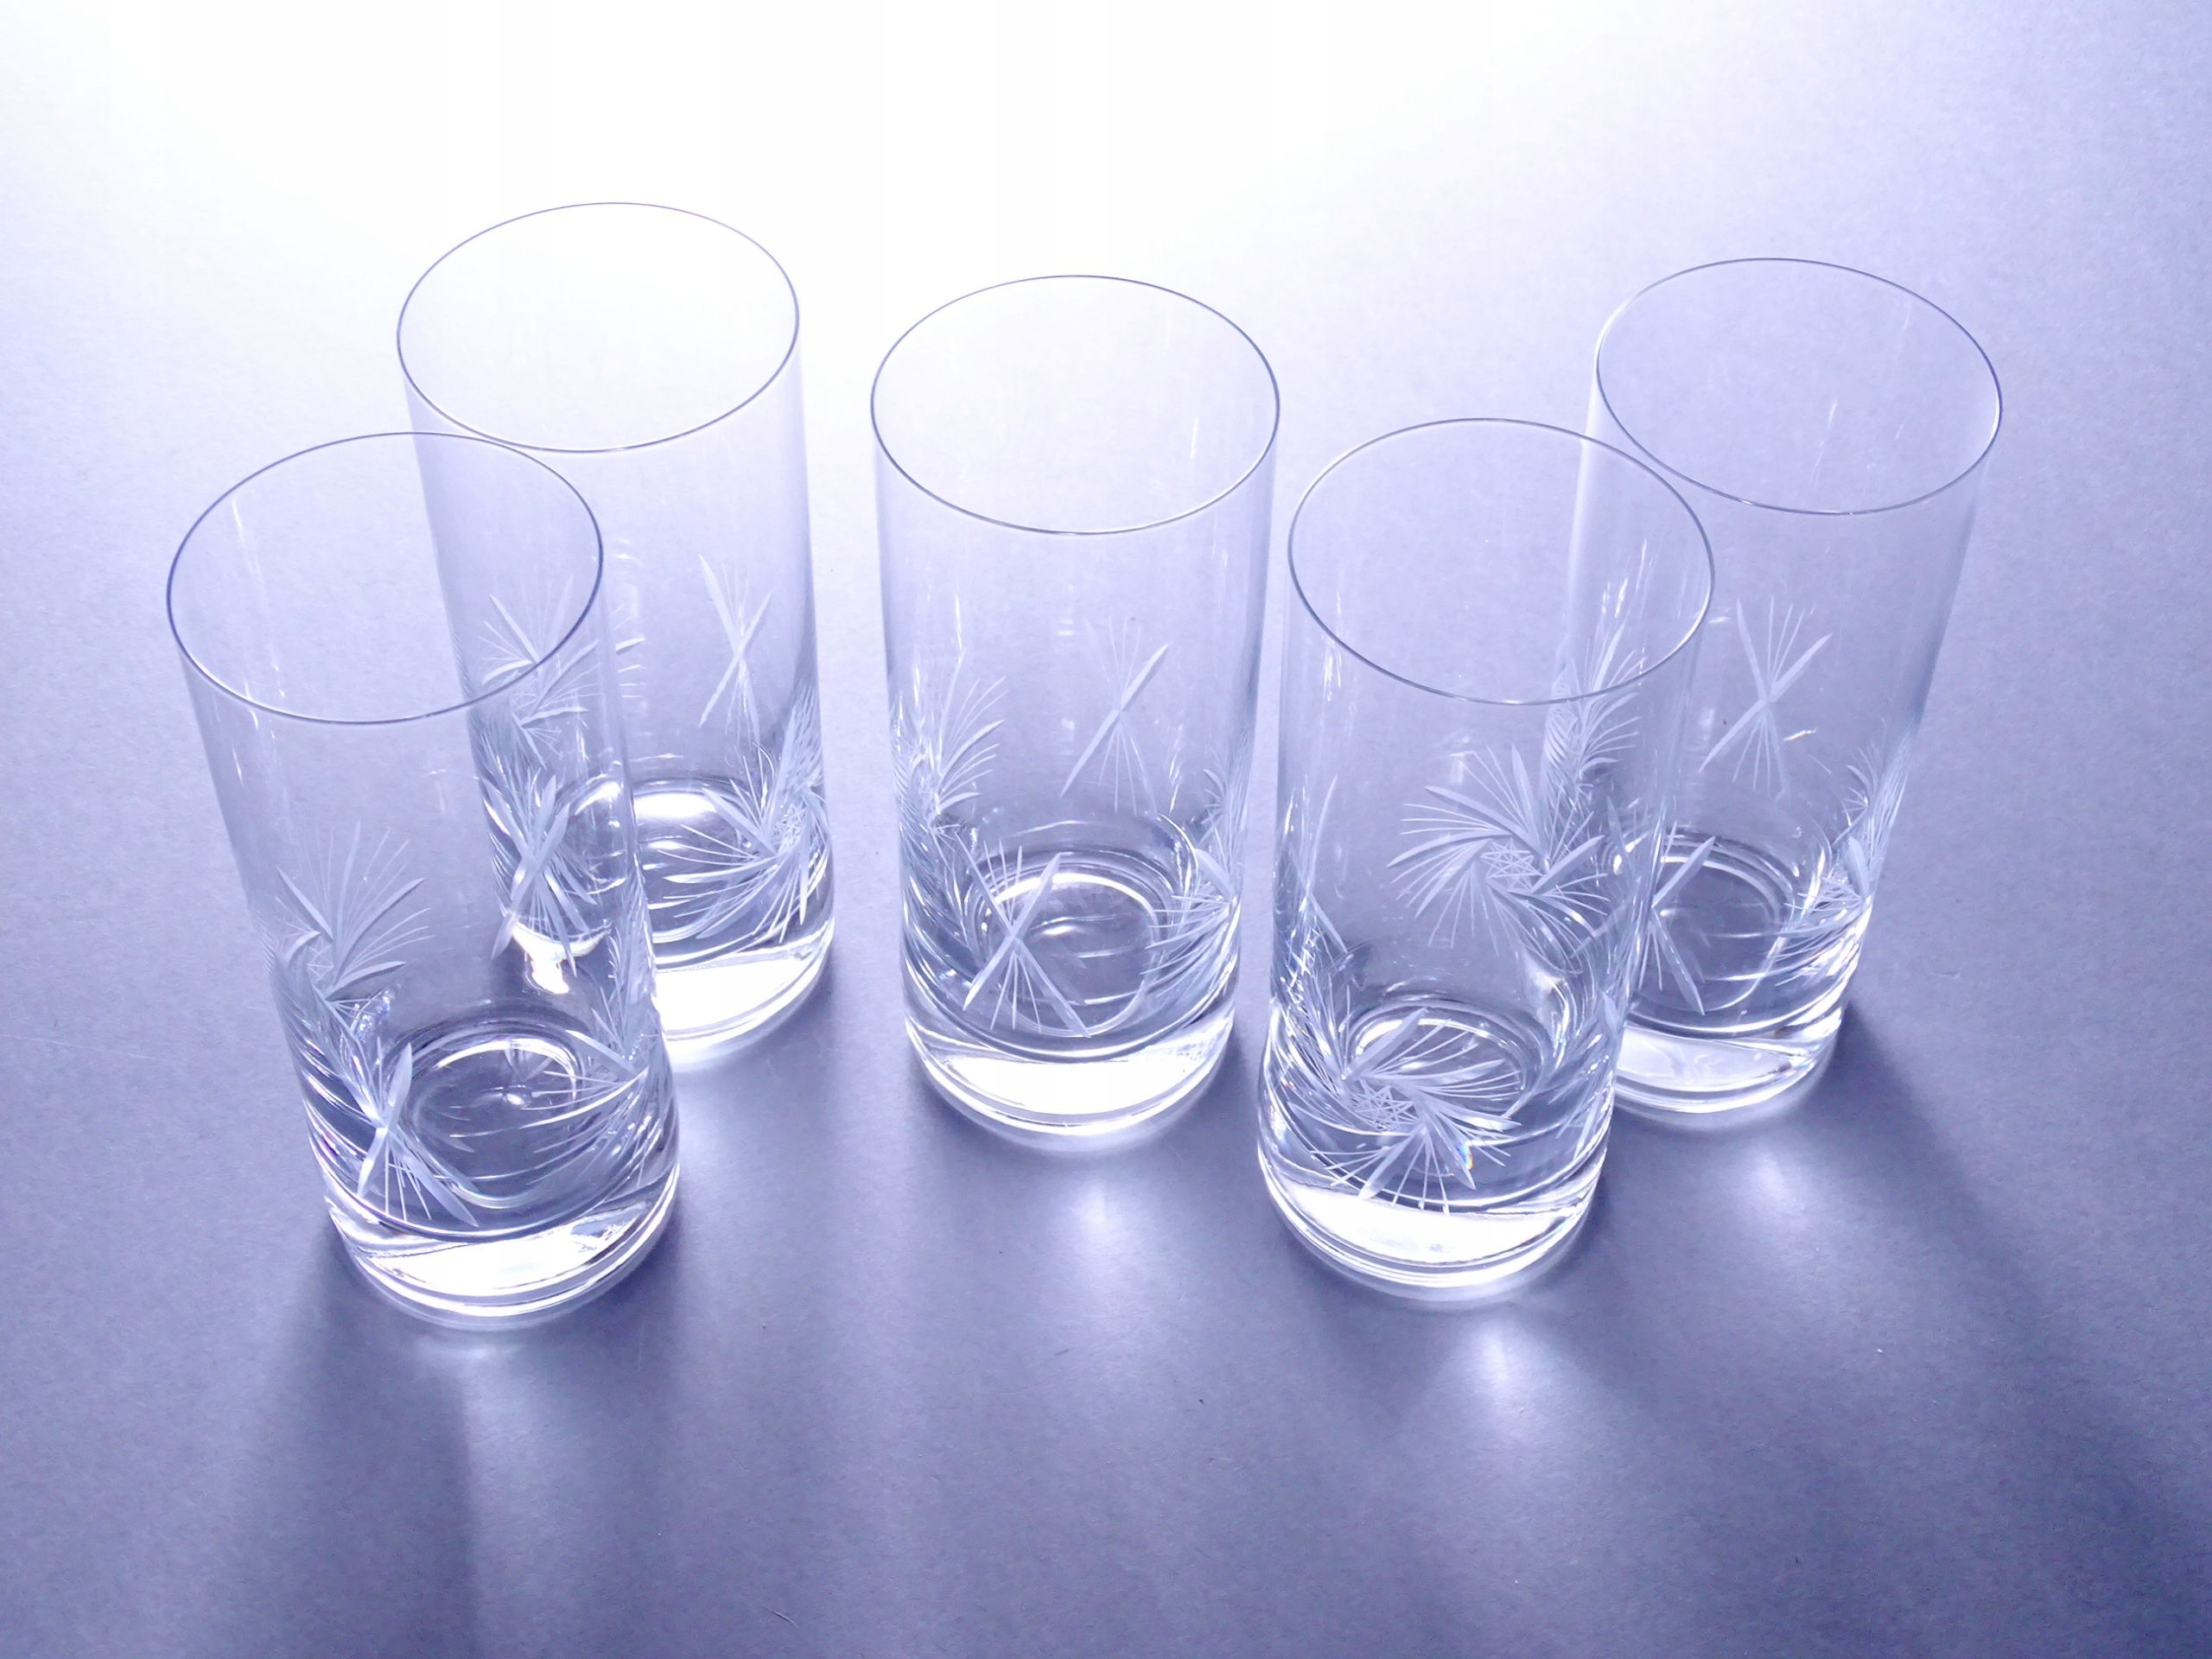 piękne szklifowane szklanki kryształowe